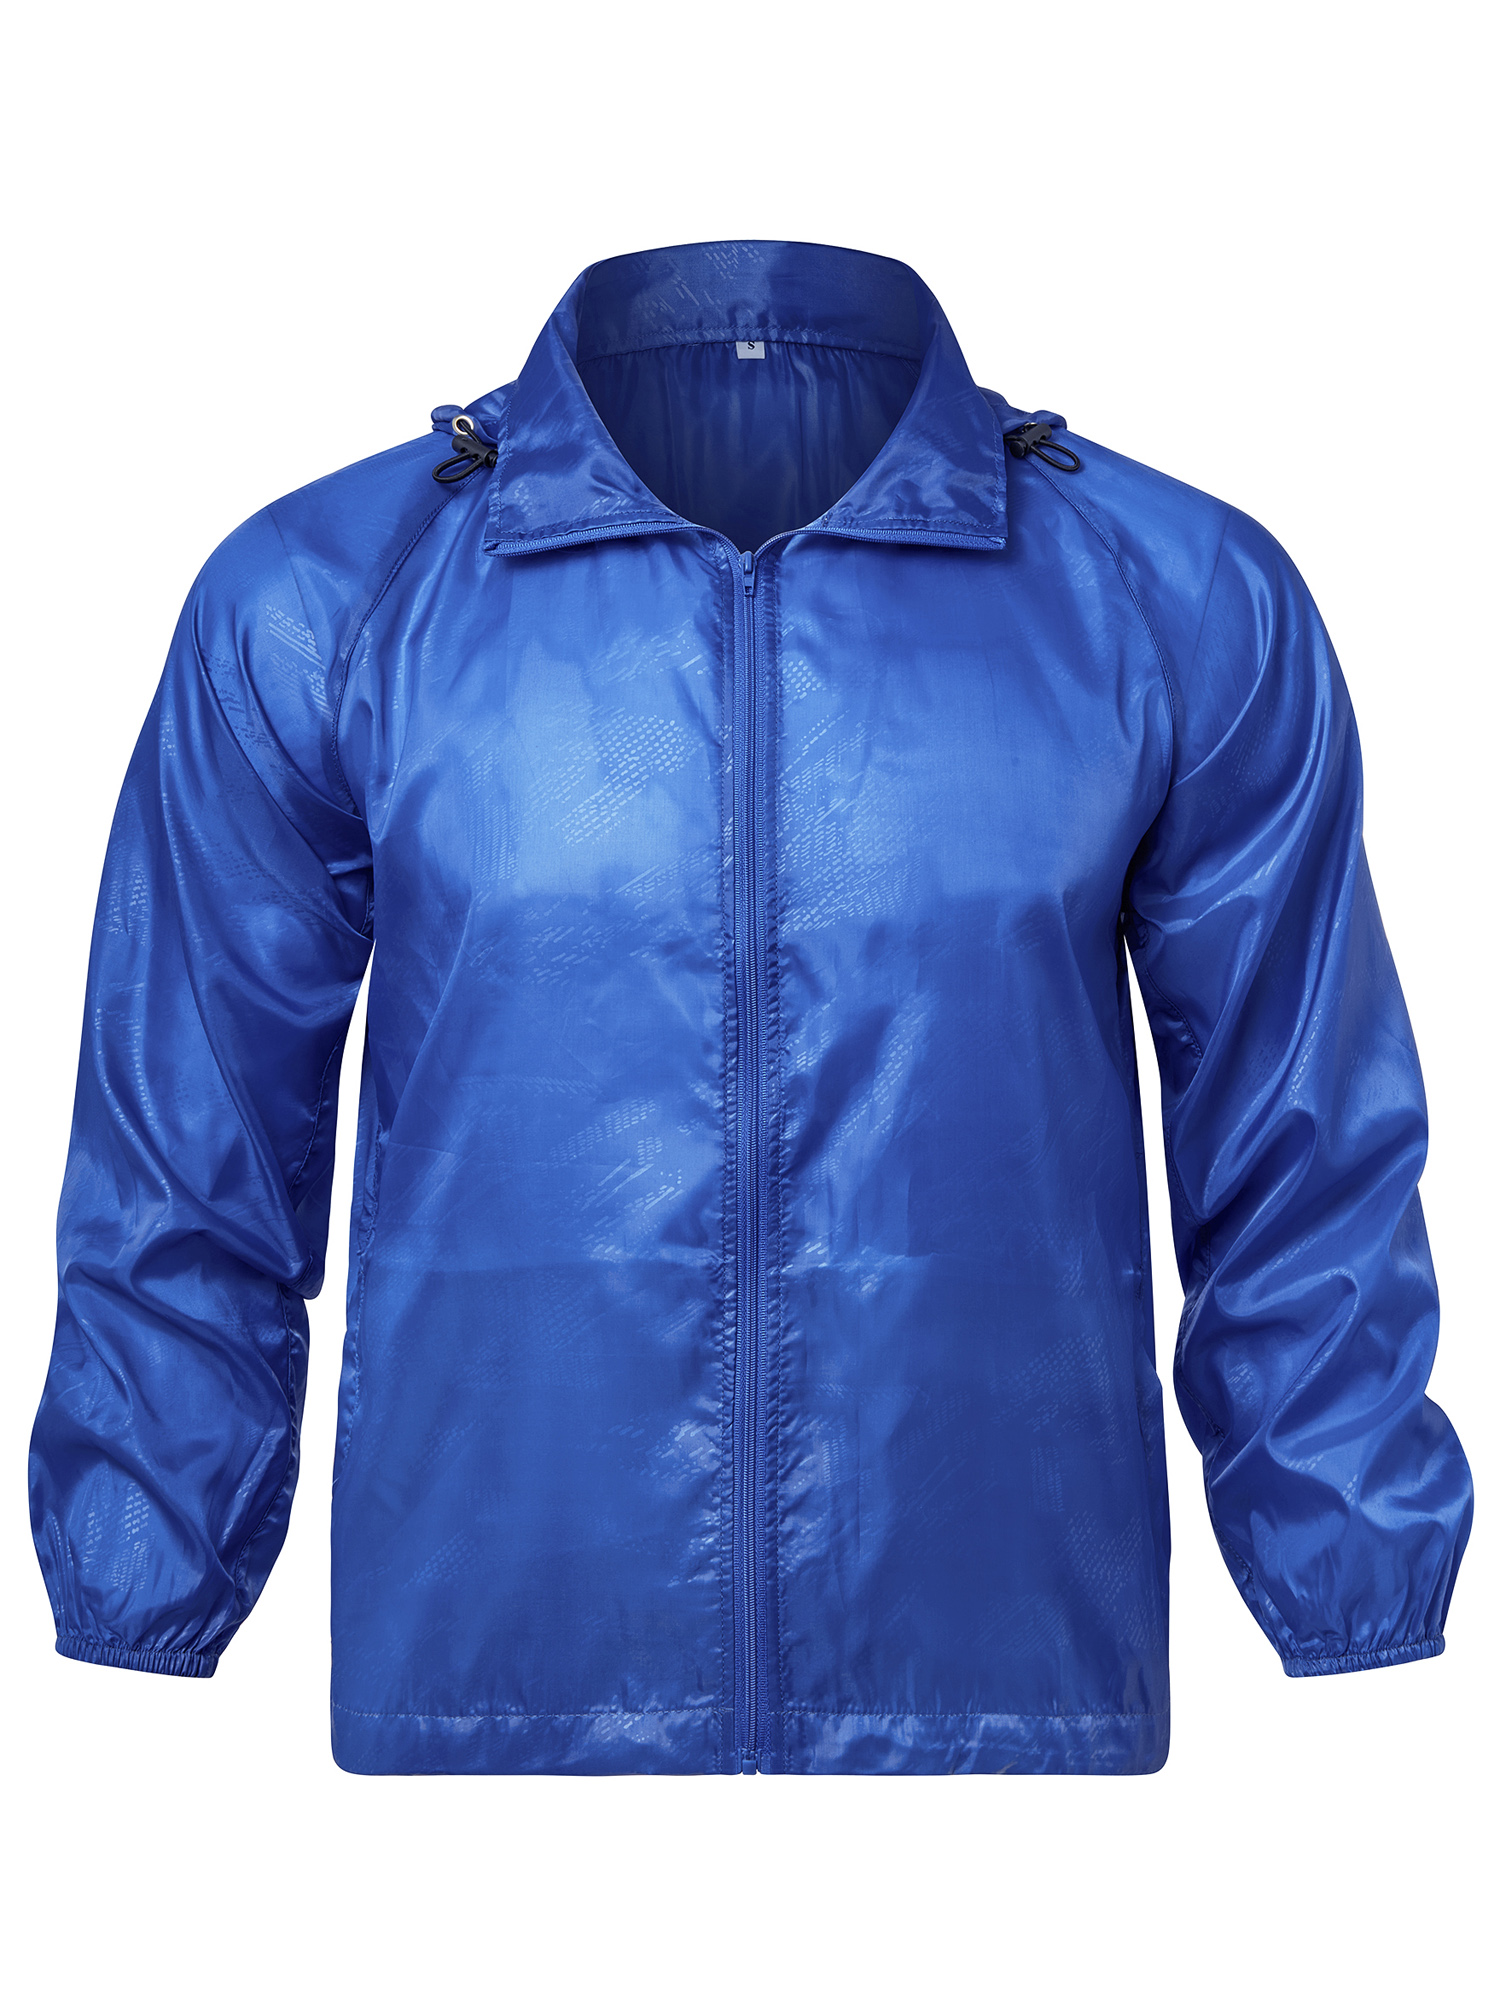 LELINTA Women Nylon Windbreaker Jacket Sport Casual Lightweight Zipper Hooded Outdoor Jacket, Black/ Royal Blue - image 5 of 9